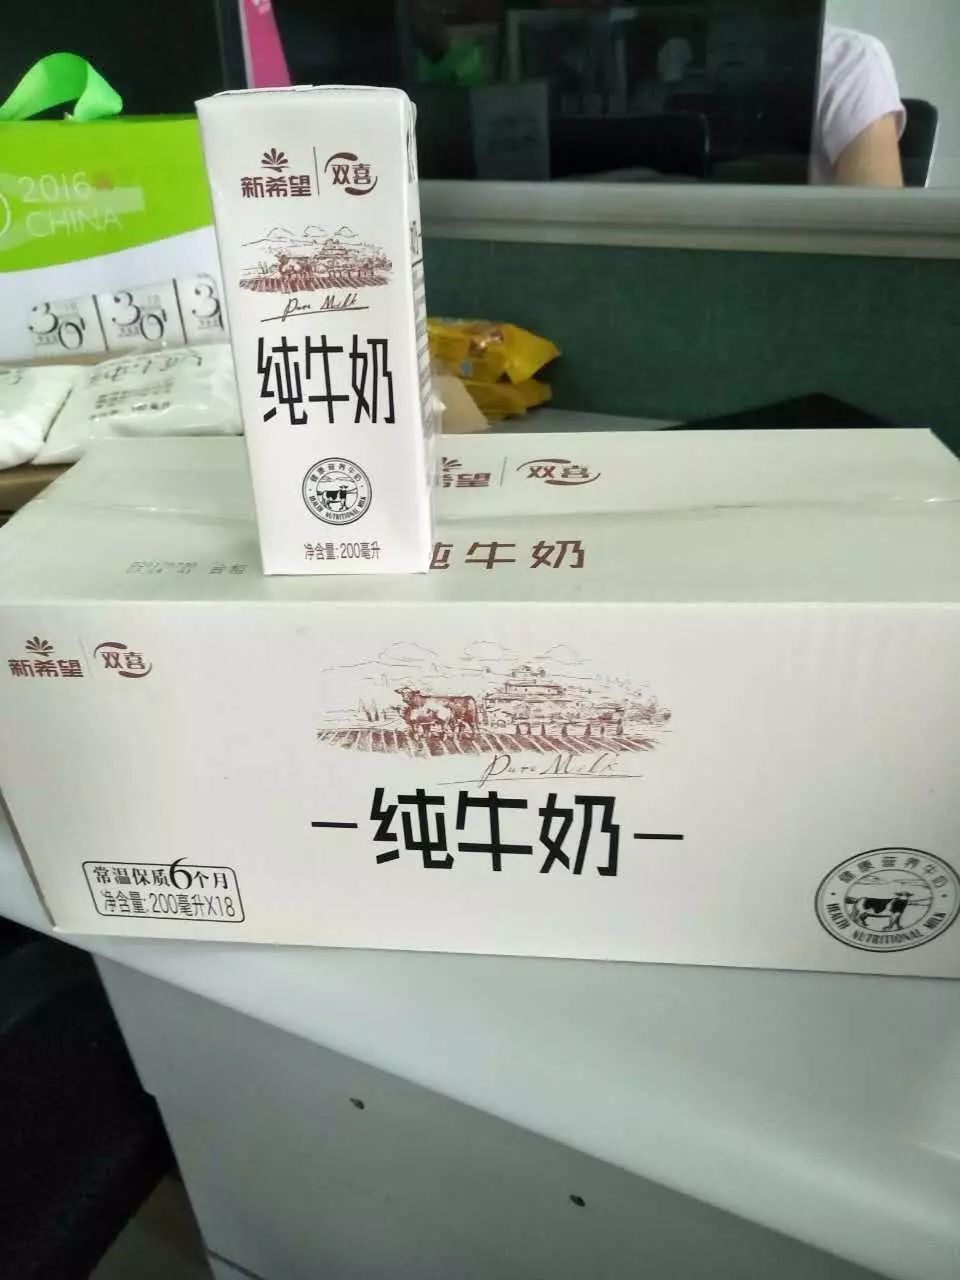 【浙江牛奶价格联盟】千岛湖牧场纯牛奶特价!(g20峰会